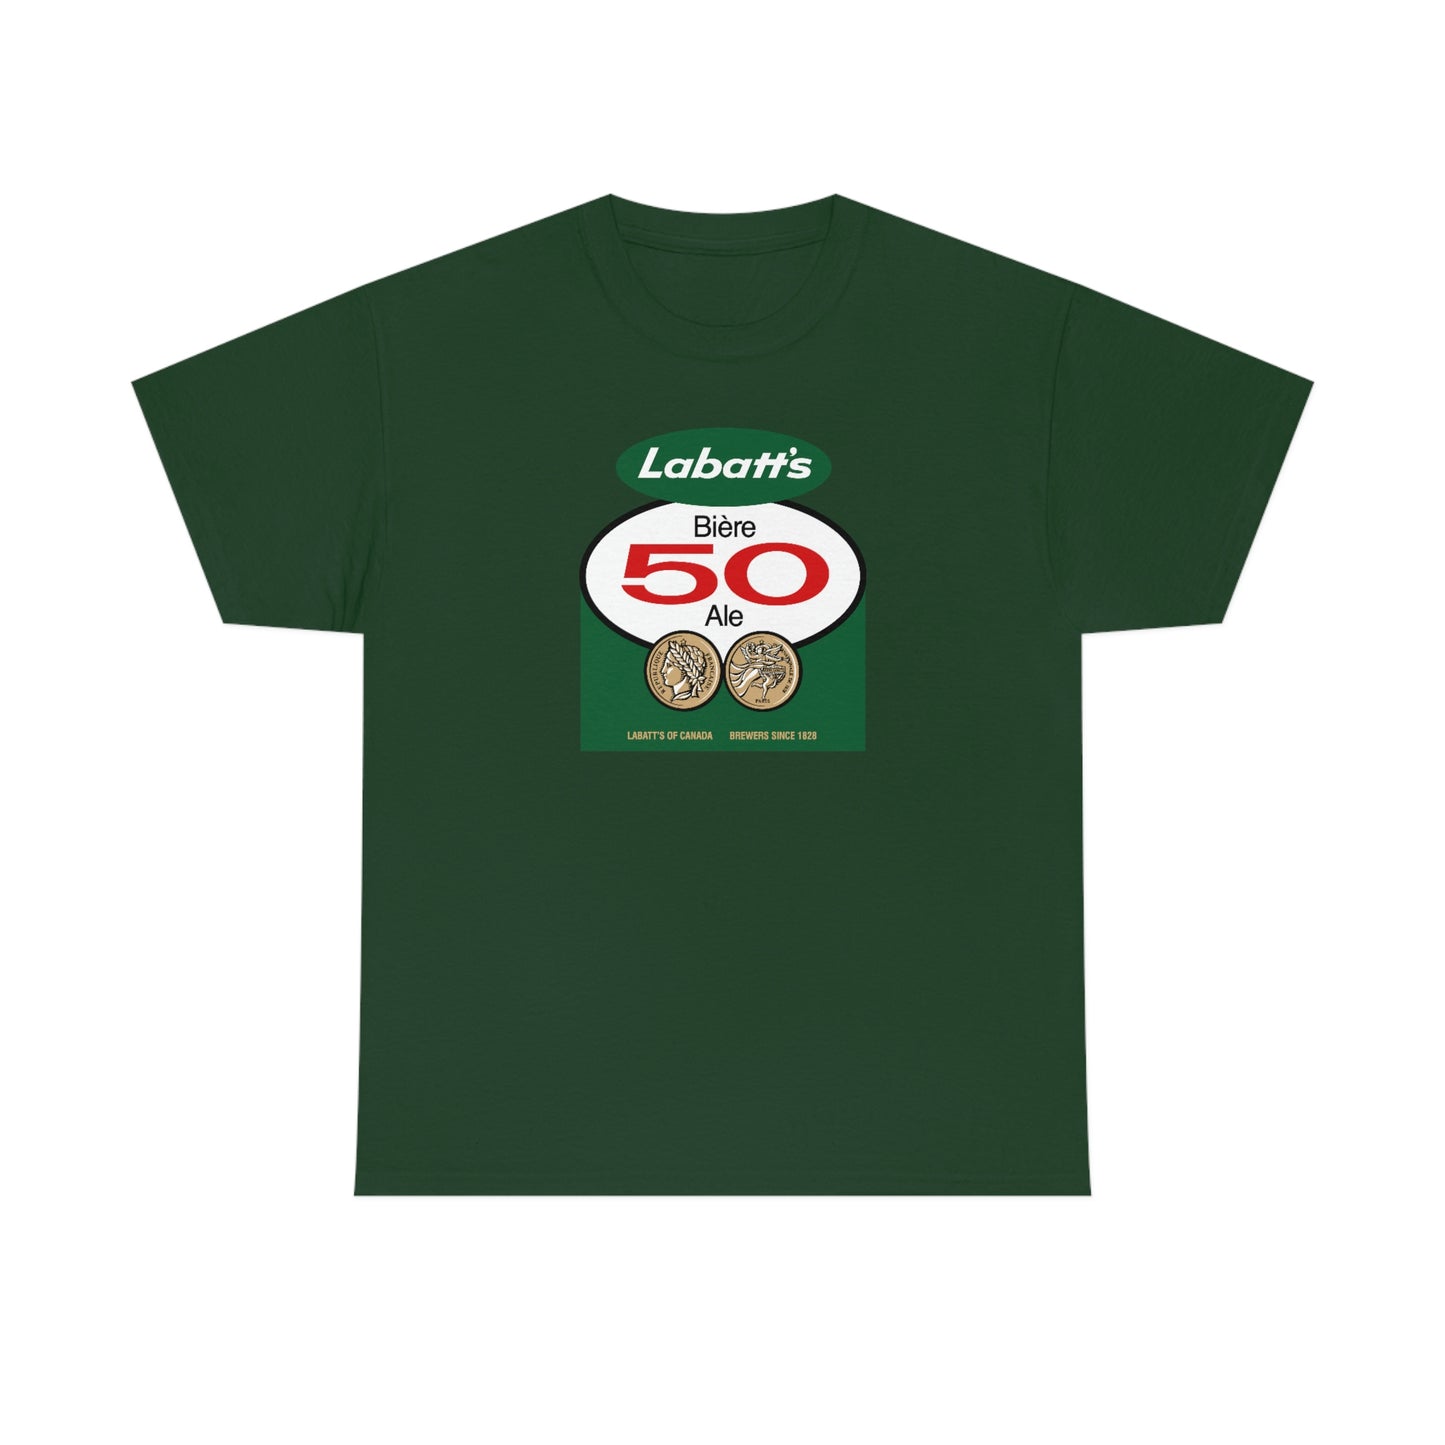 Labatt's 50 T-Shirt